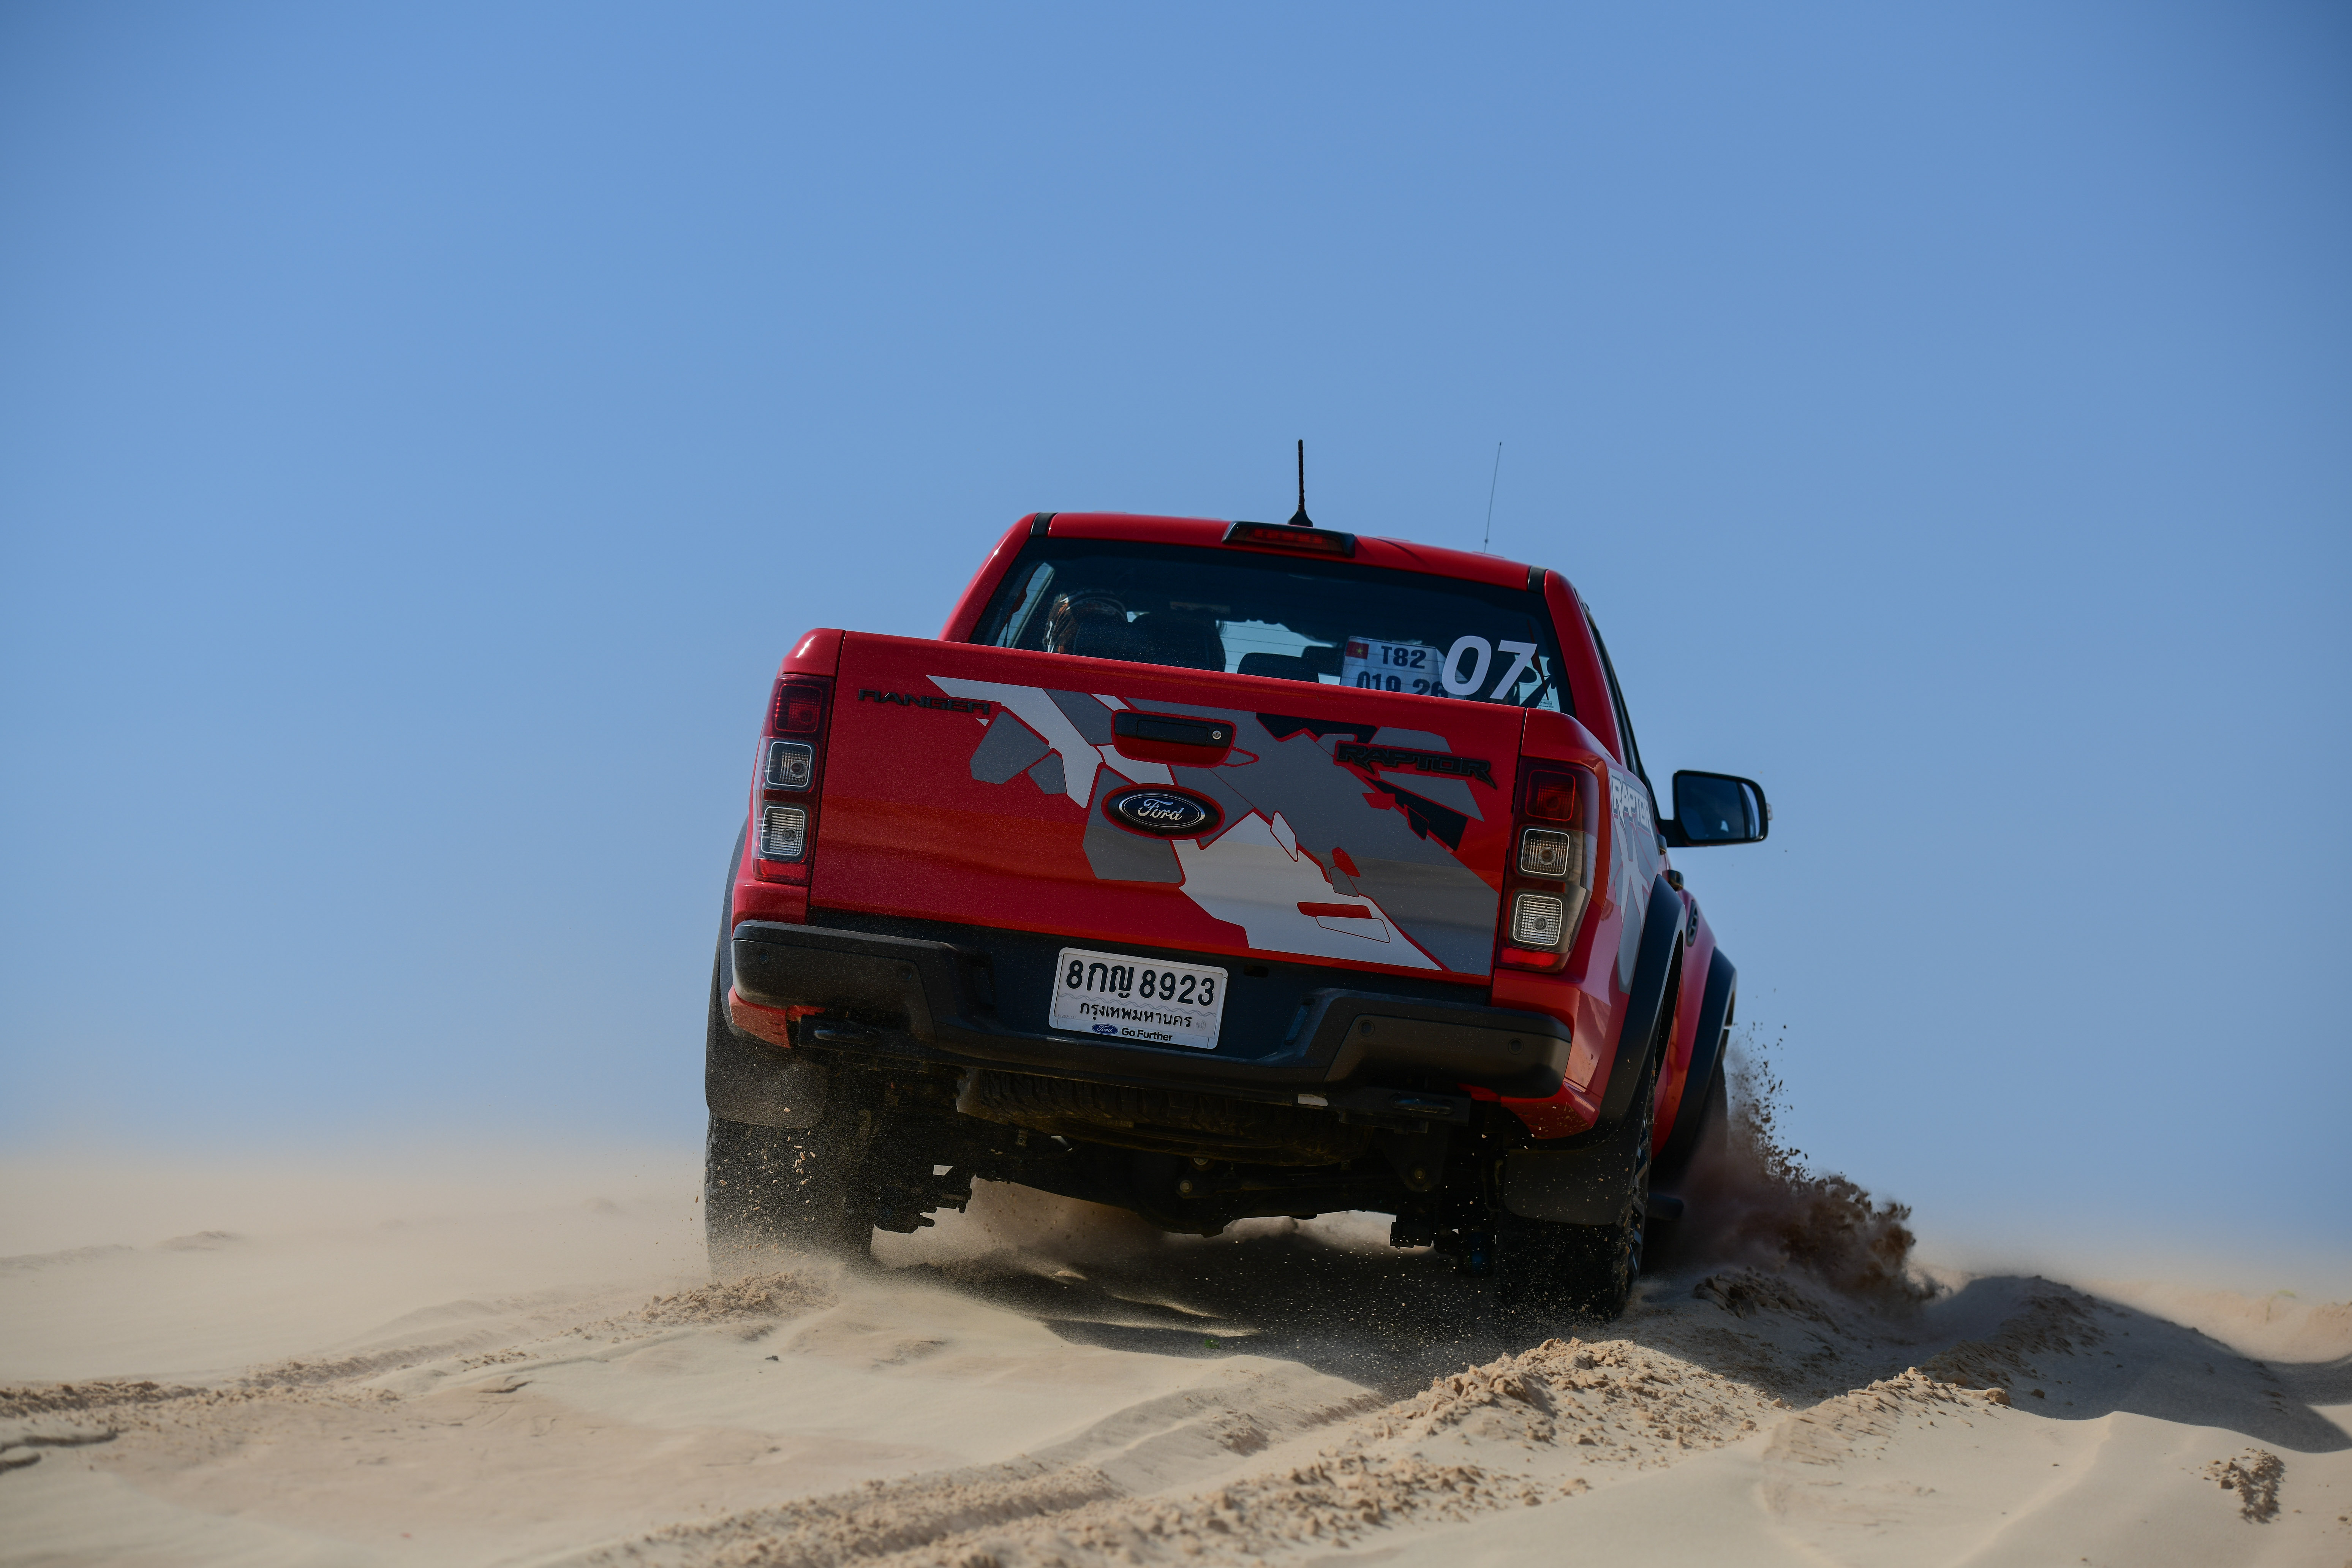 Chinh phục đồi cát Bàu Trắng cùng Ford Ranger Raptor ranger-raptor-drive-in-muine-4-3-2020-160.jpg